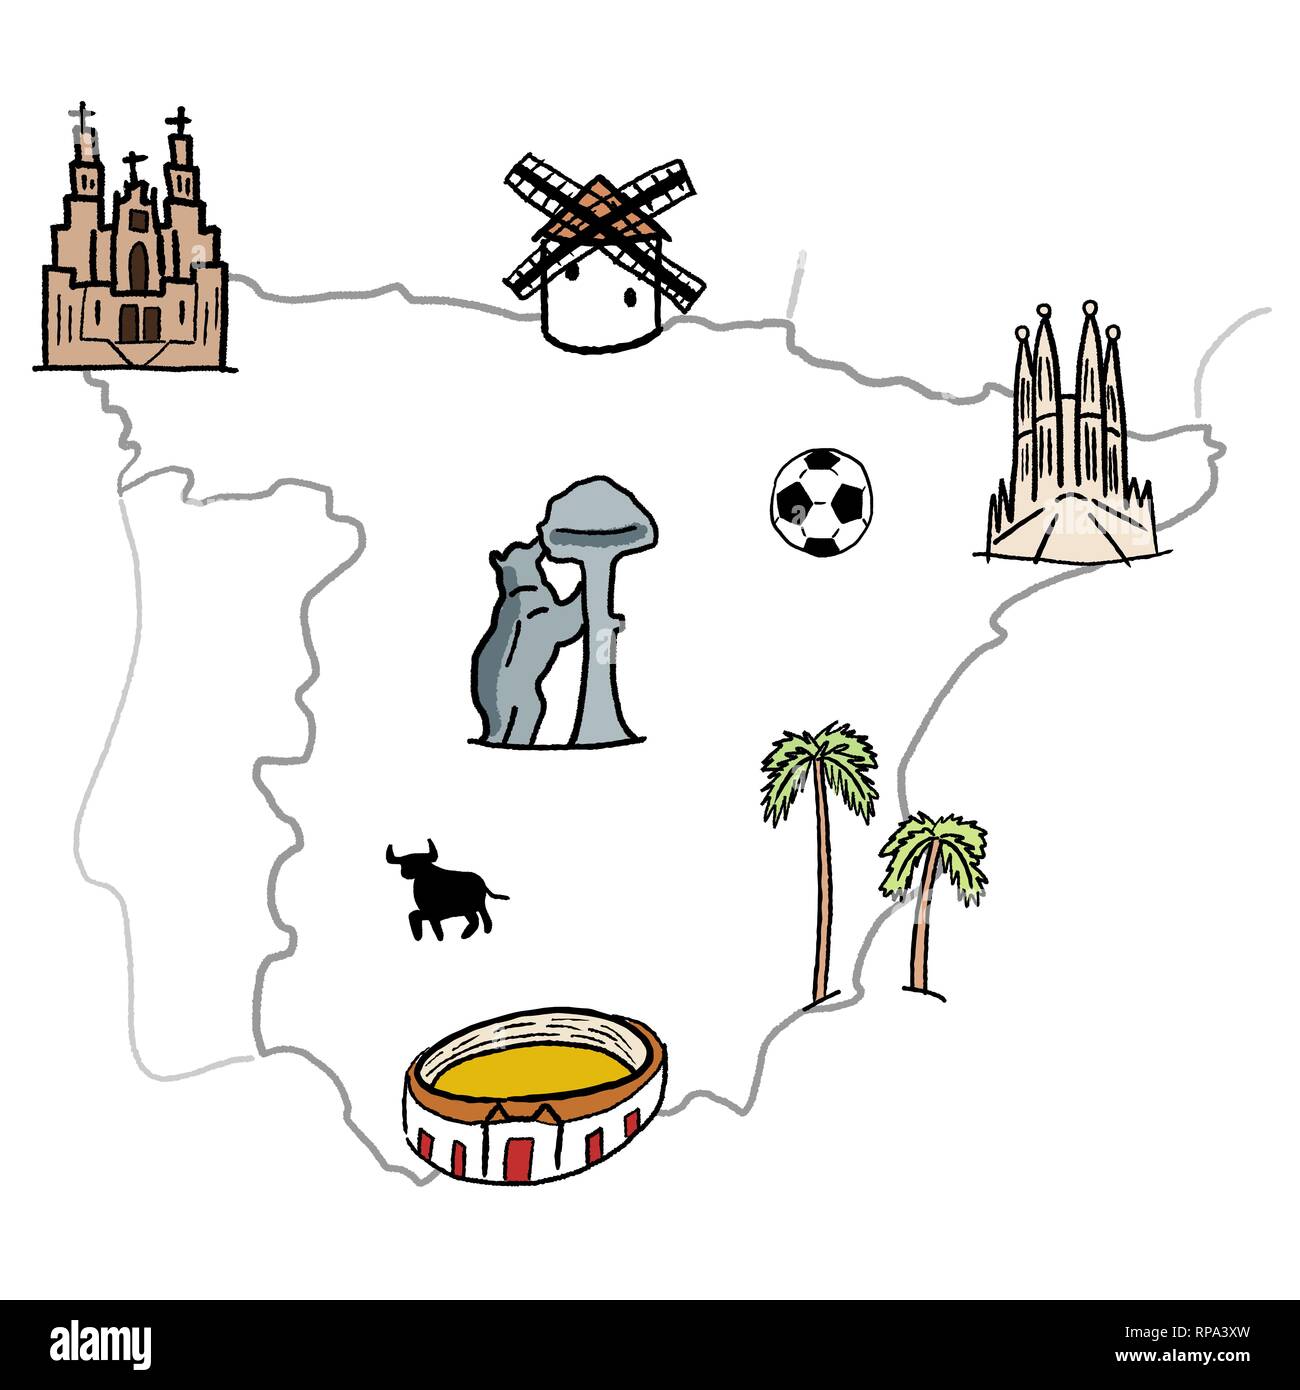 Spagna mappa dei punti di riferimento - molto carino doodle grafica vettoriale con Madrid e Barcellona, Santiago de Compostela, Siviglia e il calcio. Illustrazione Vettoriale